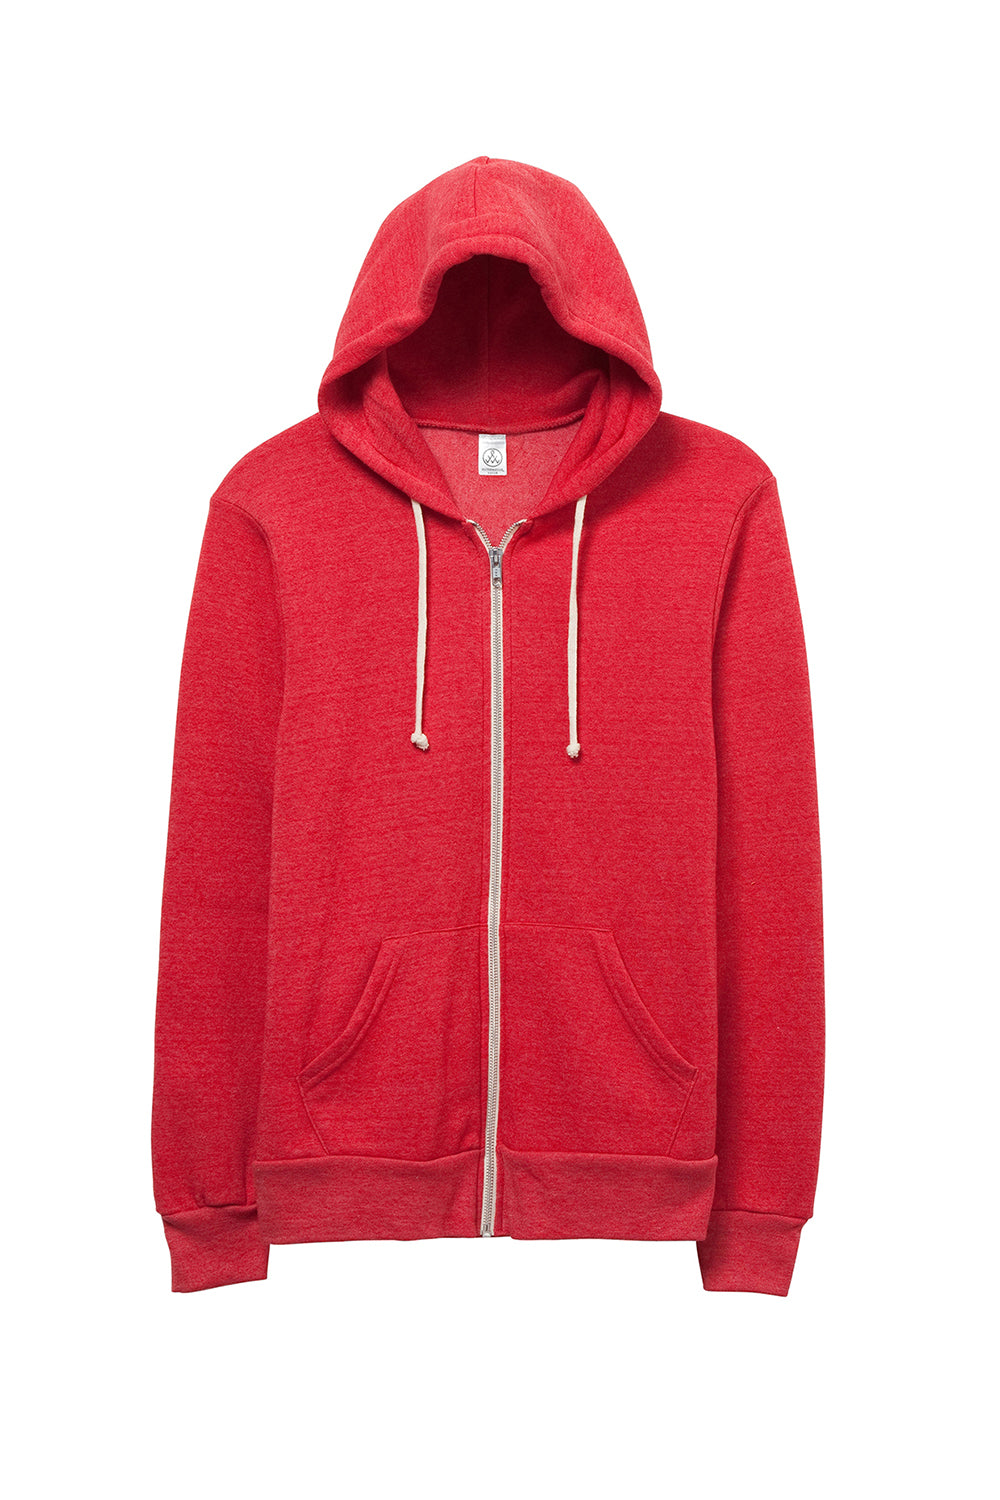 Alternative AA9590/9590 Mens Rocky Eco Fleece Full Zip Hooded Sweatshirt Hoodie Eco True Red Flat Front